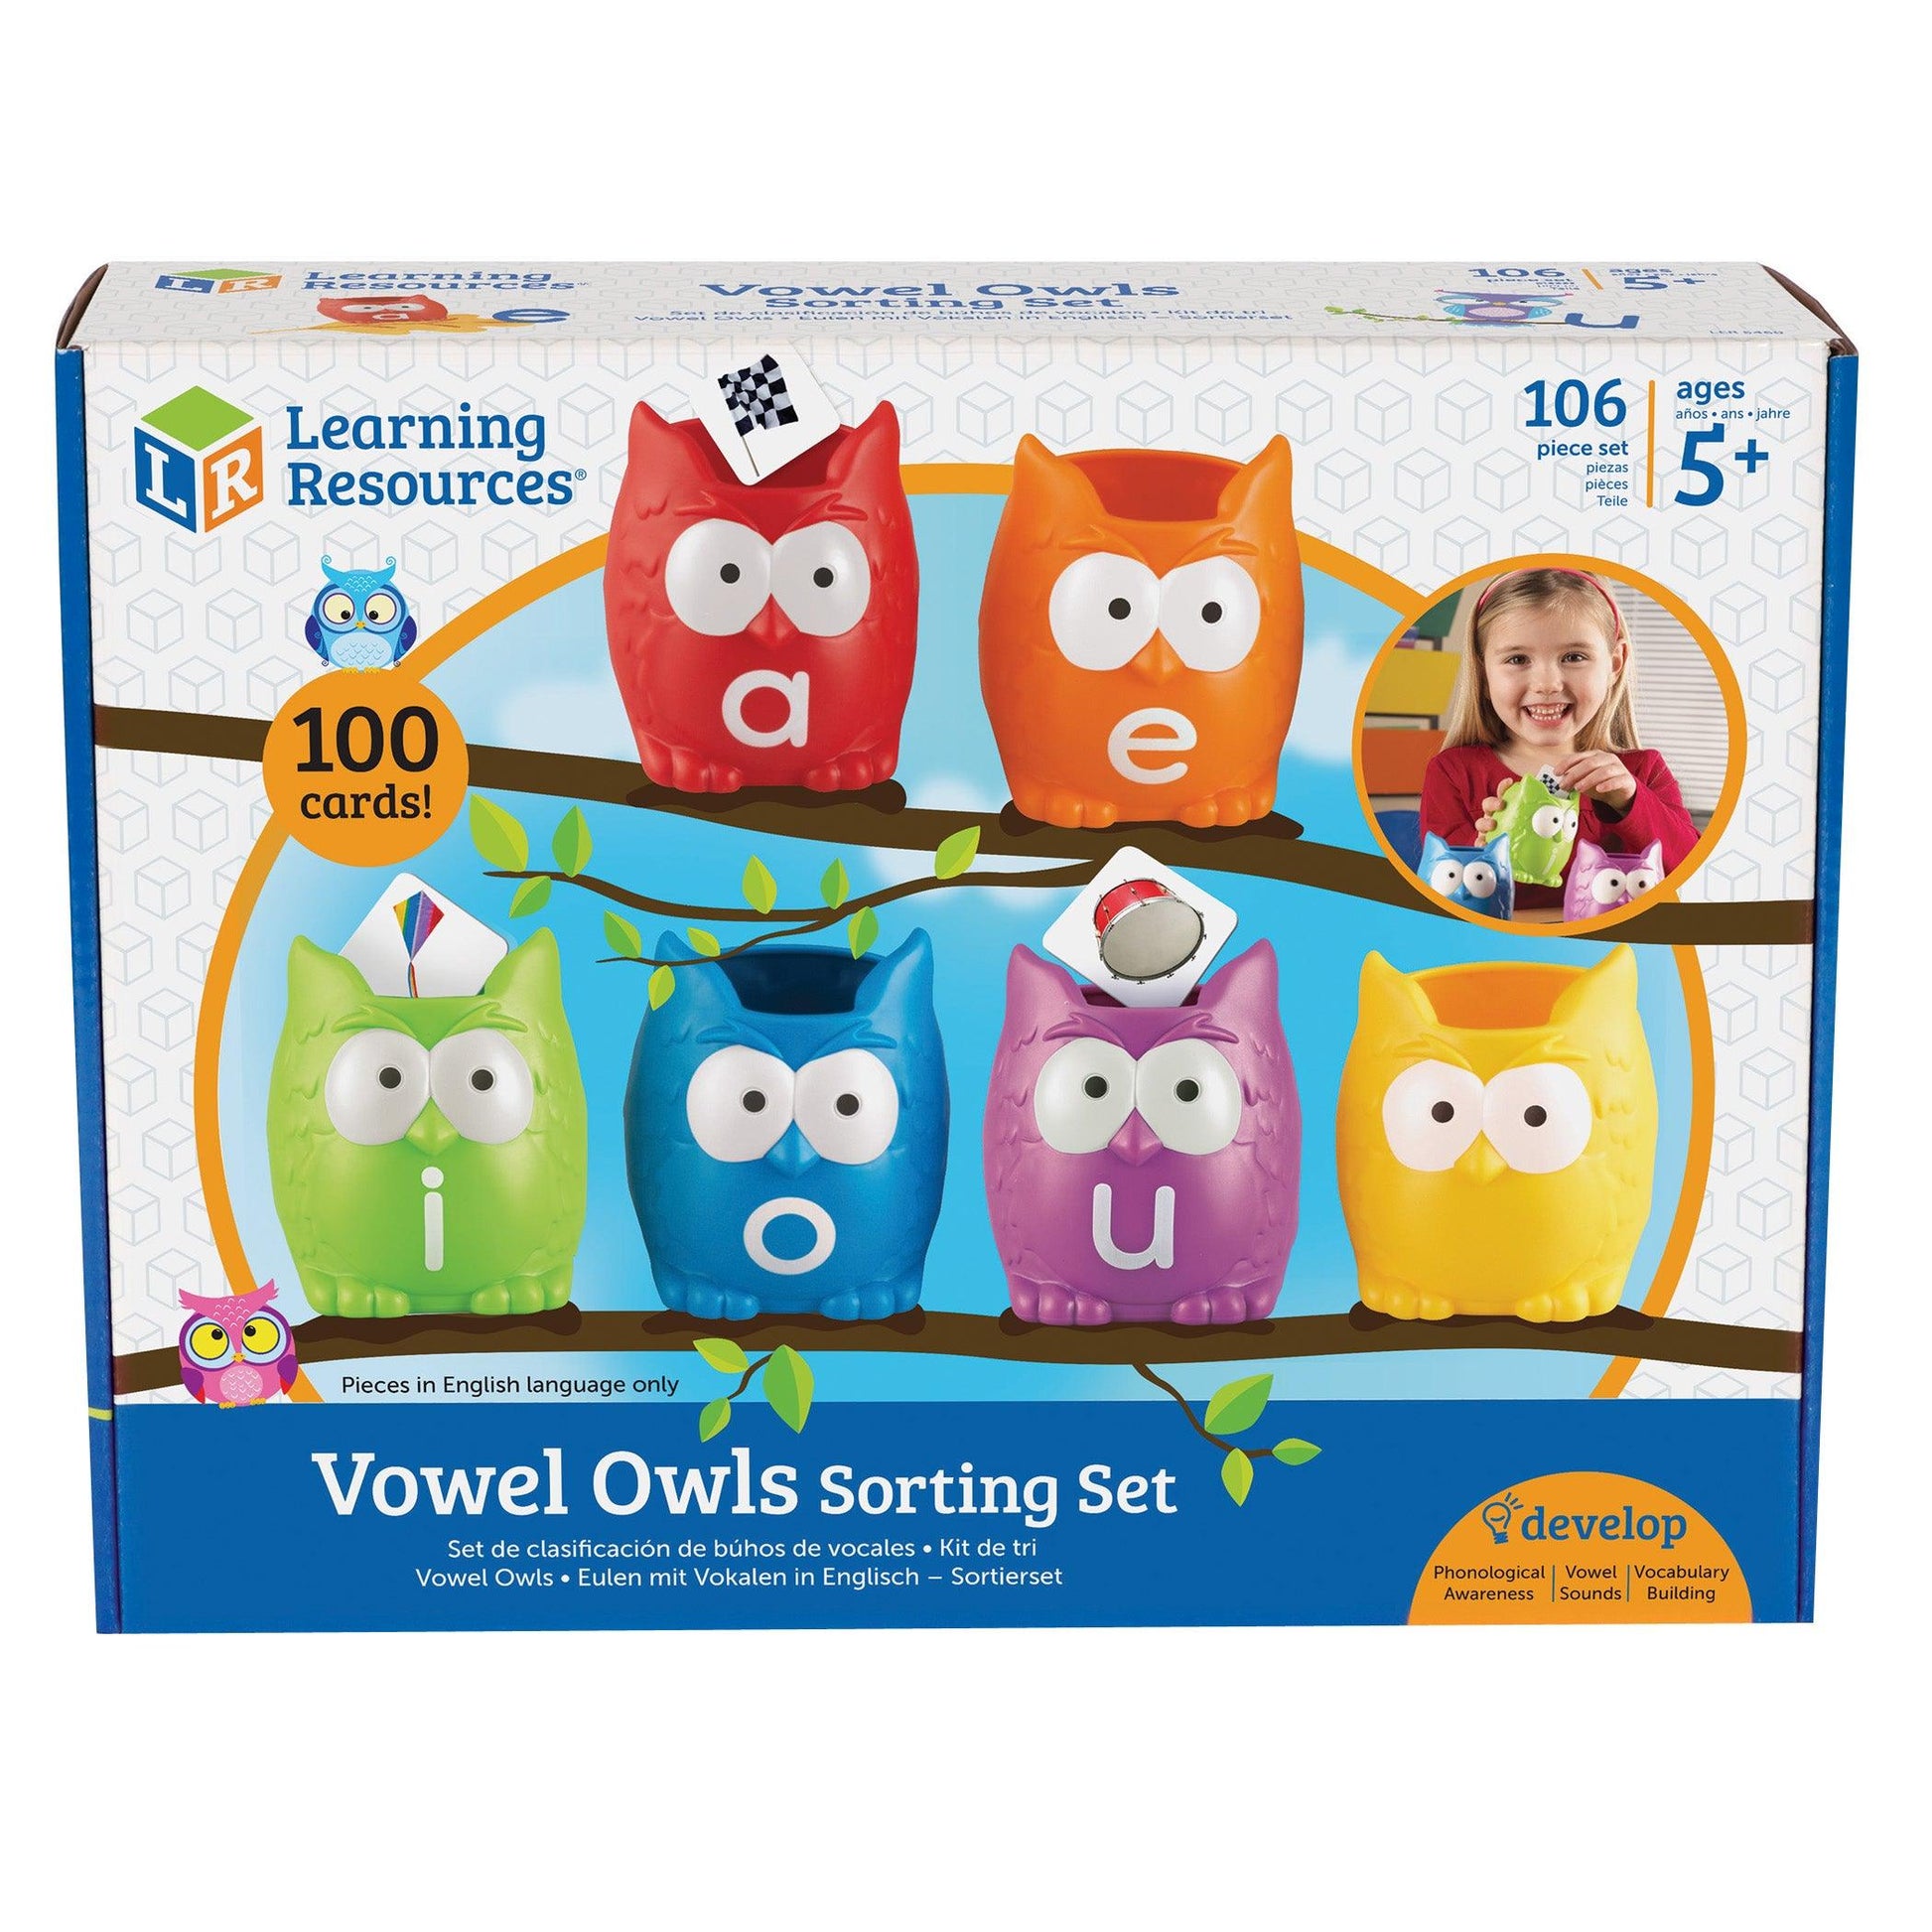 Vowel Owls™ Sorting Set - Loomini